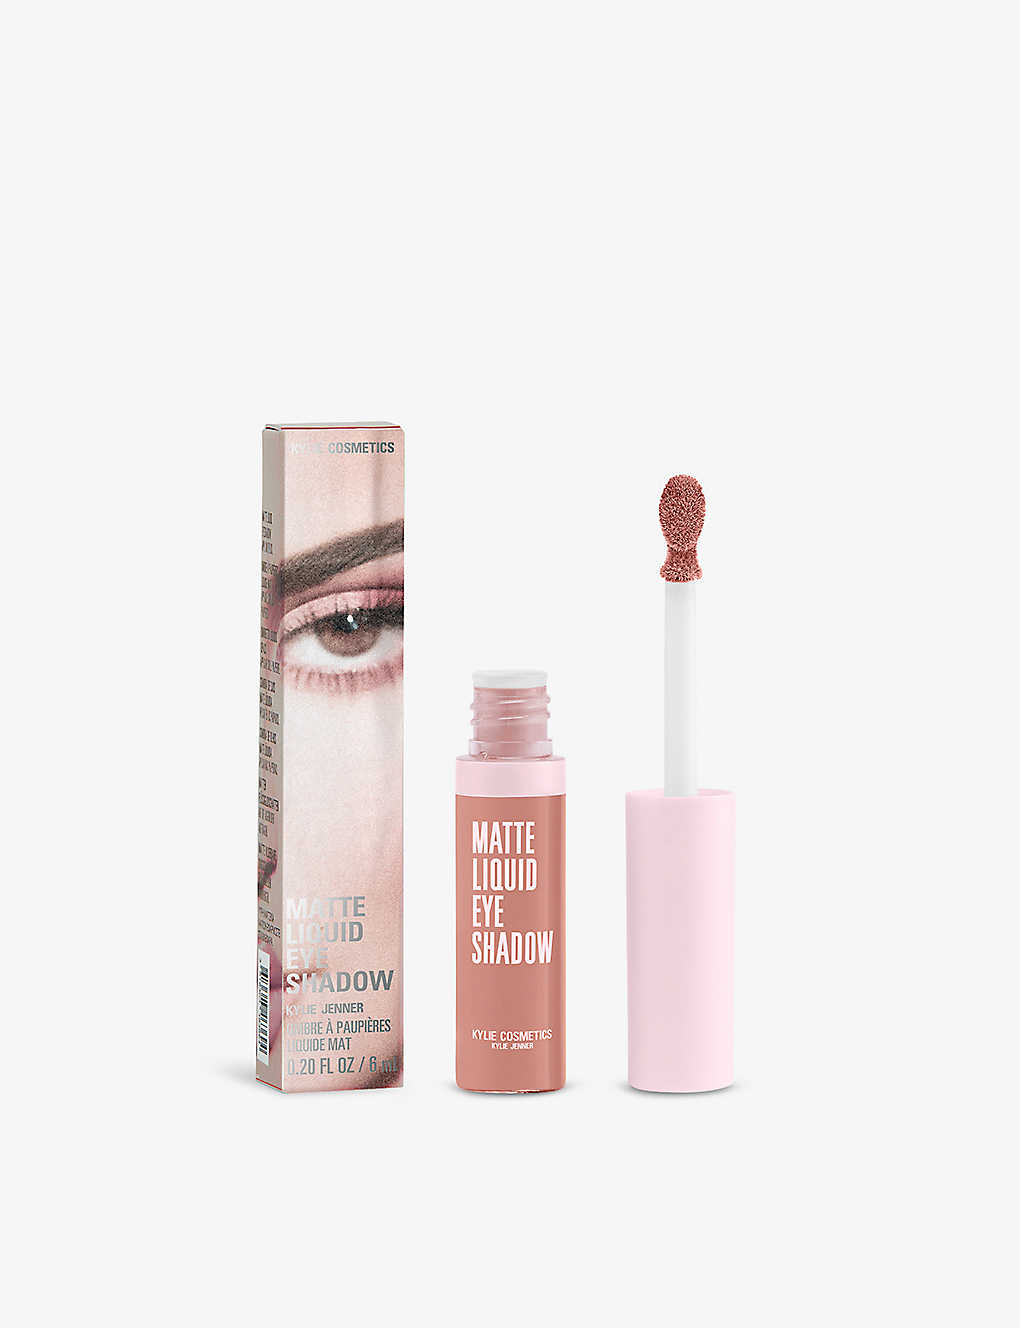 Kylie By Kylie Jenner Always In Szn Matte Liquid Eyeshadow 6ml